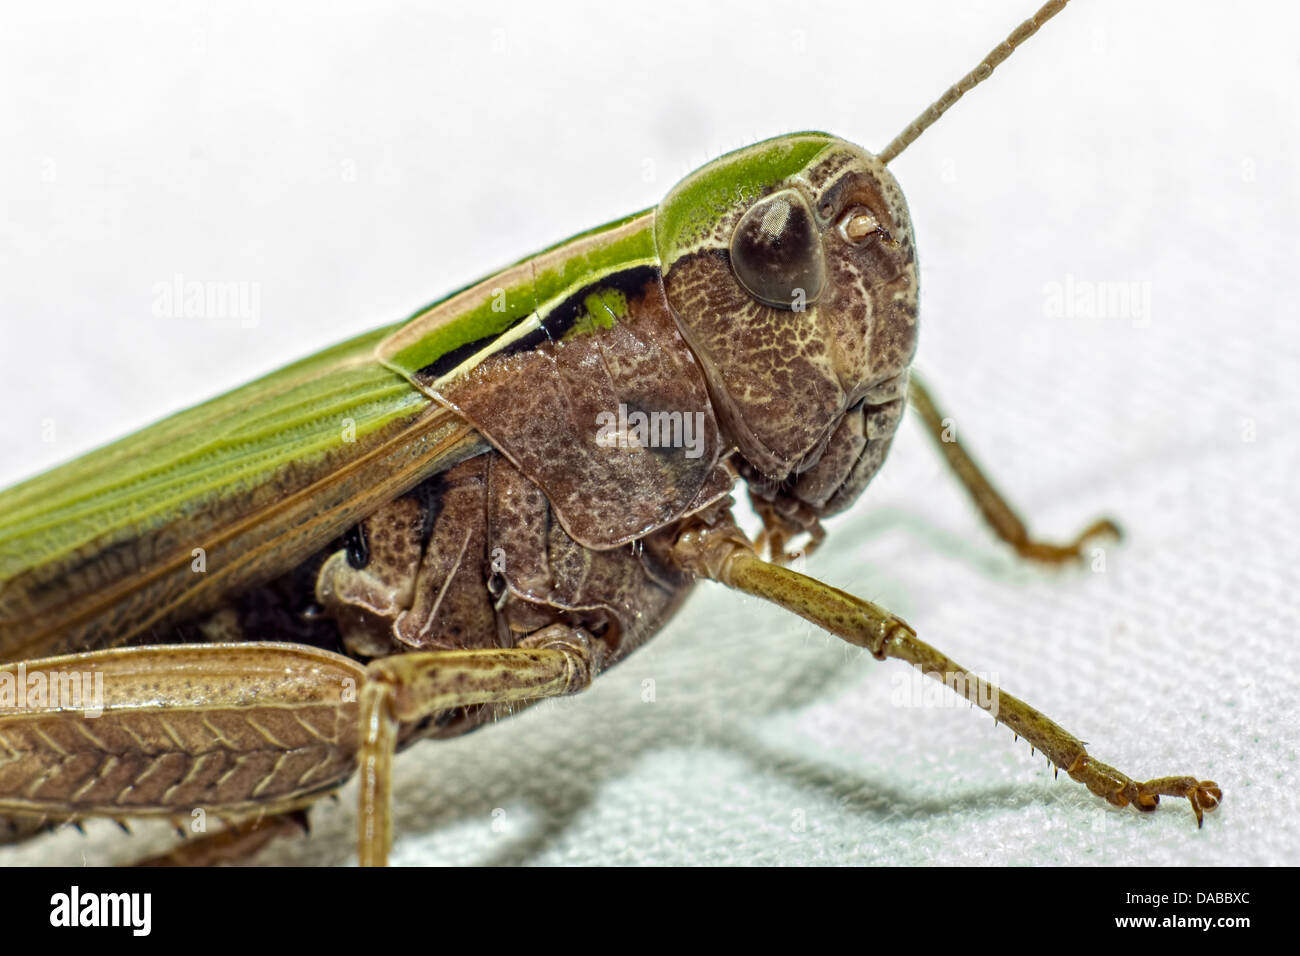 Portrait of a grasshopper Stock Photo